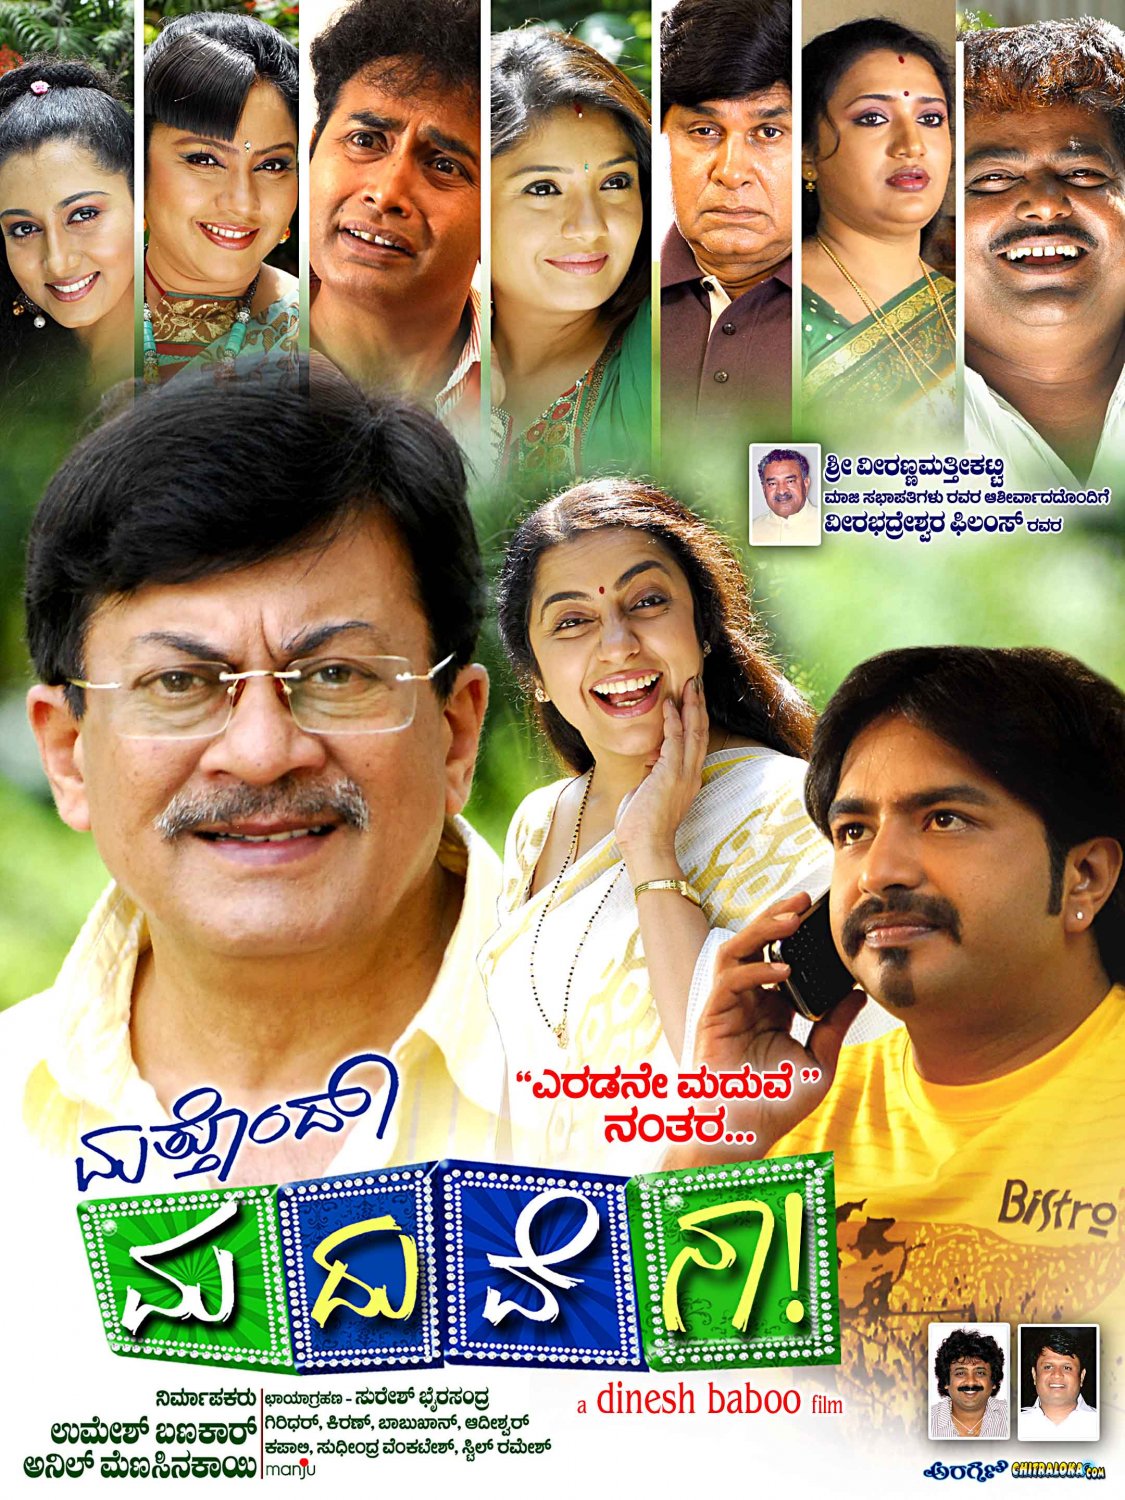 Extra Large Movie Poster Image for Mathondu Madhuvena (#9 of 15)